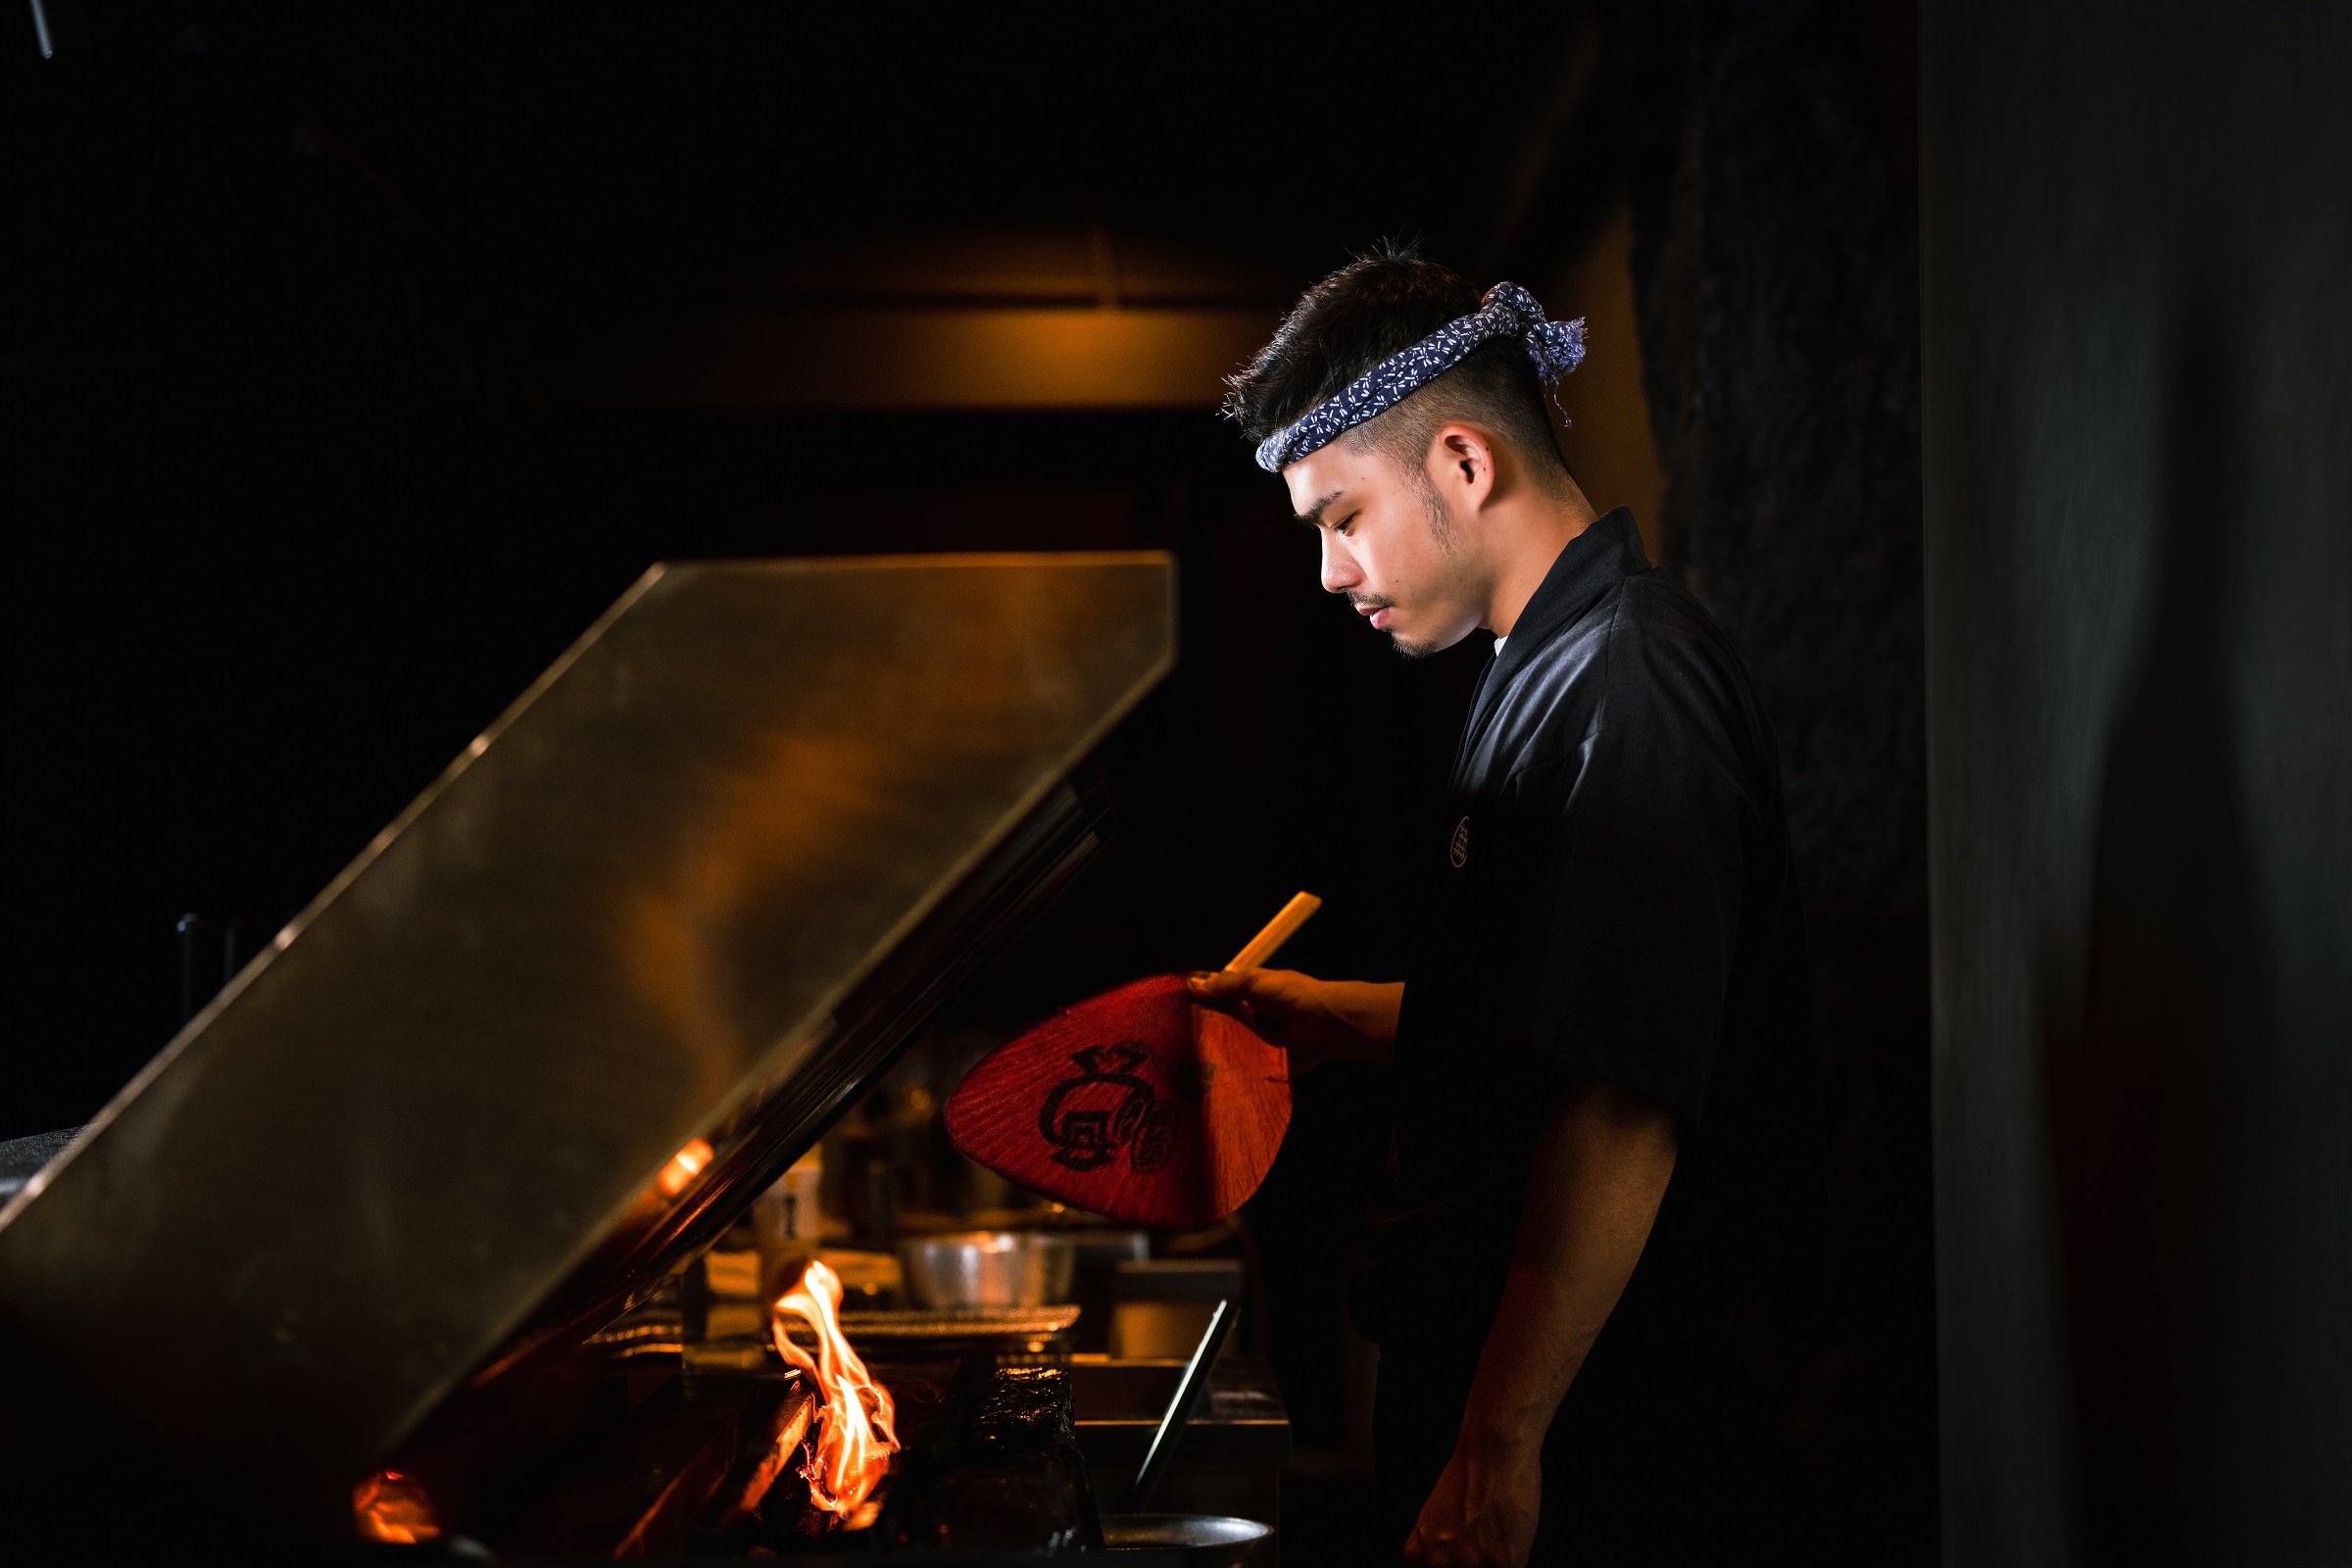 專注於火的燒鳥職人 TORISHOU鳥翔燒鳥專門店演繹無菜單板前料理